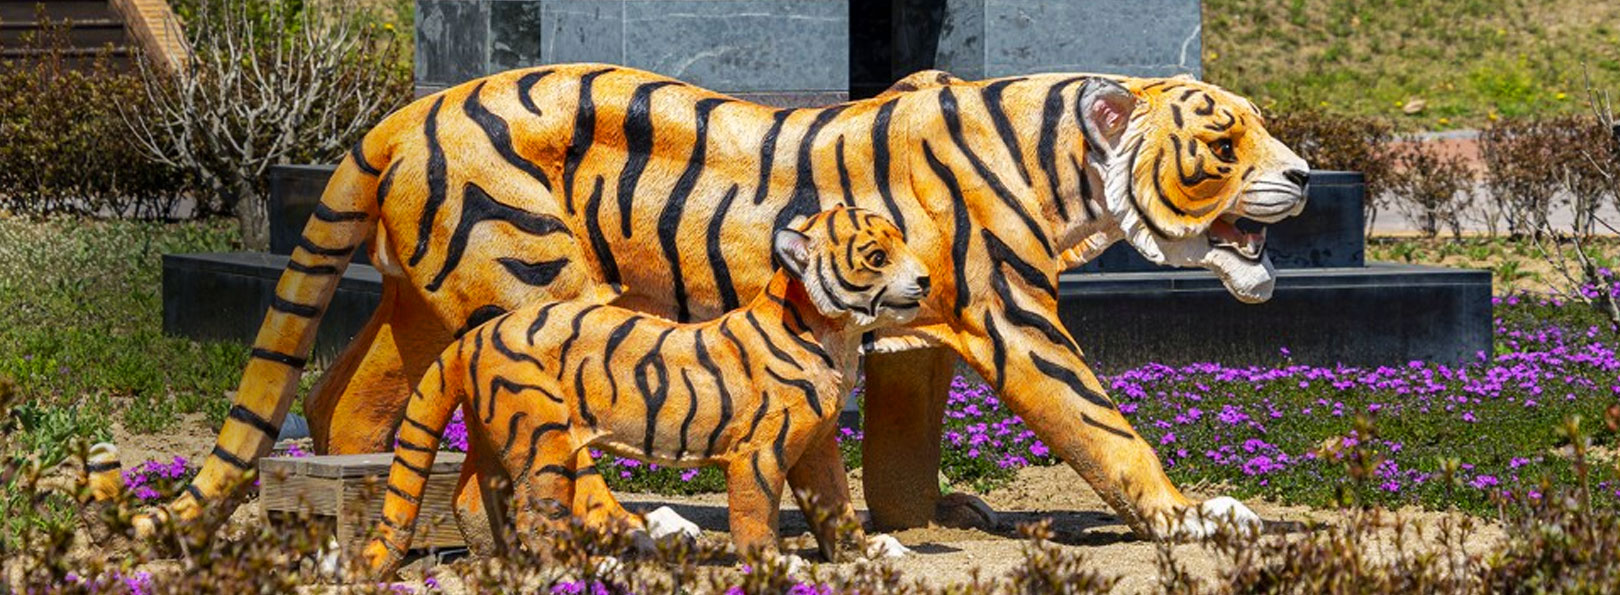 용두공원 호랑이 동상 모습